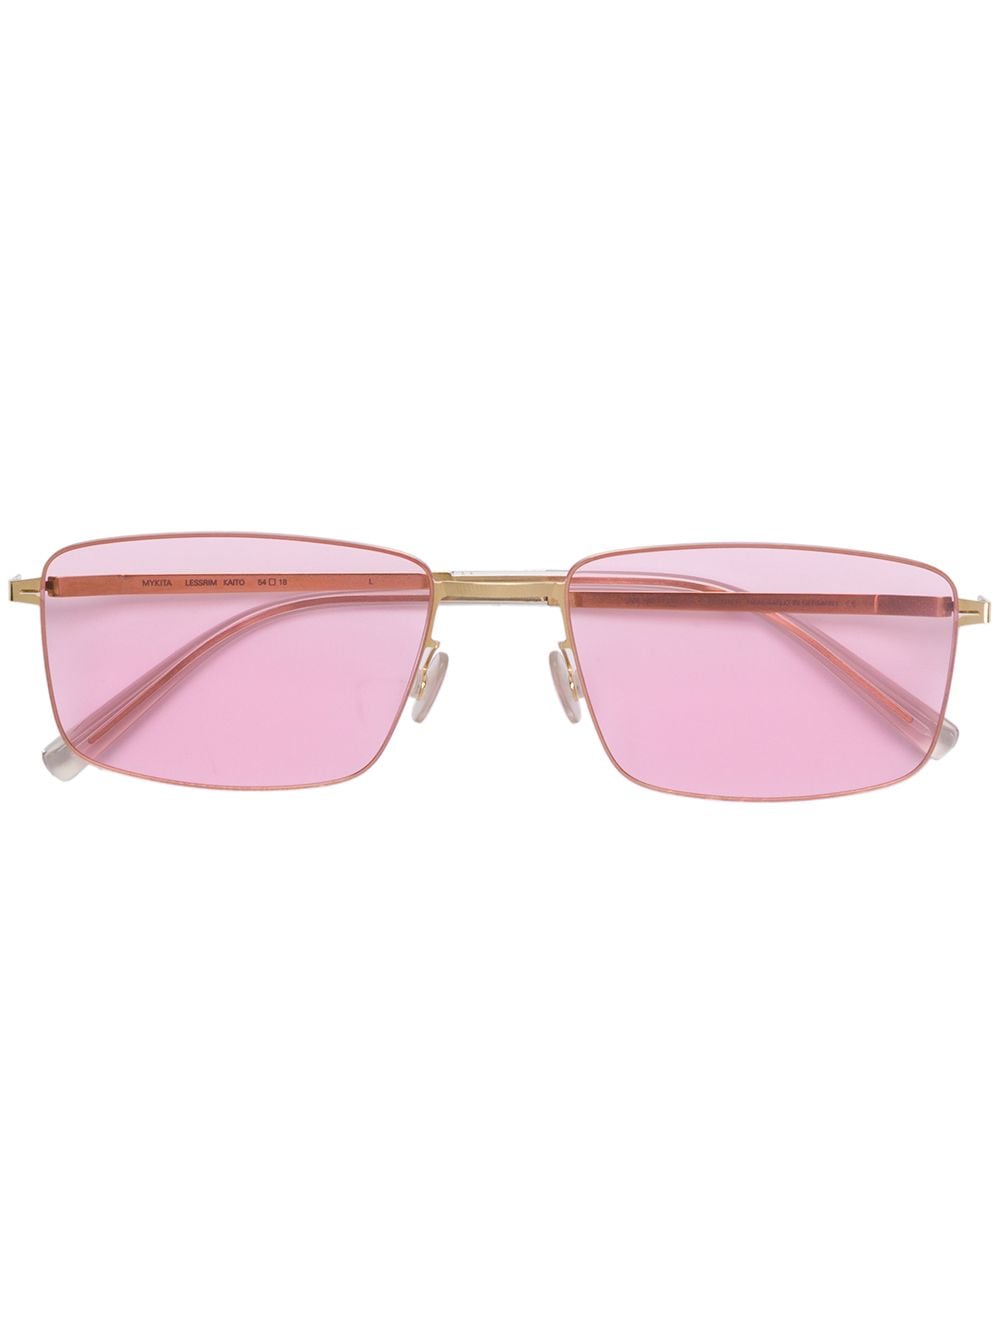 Image 1 of Mykita Kaito Glossy sunglasses